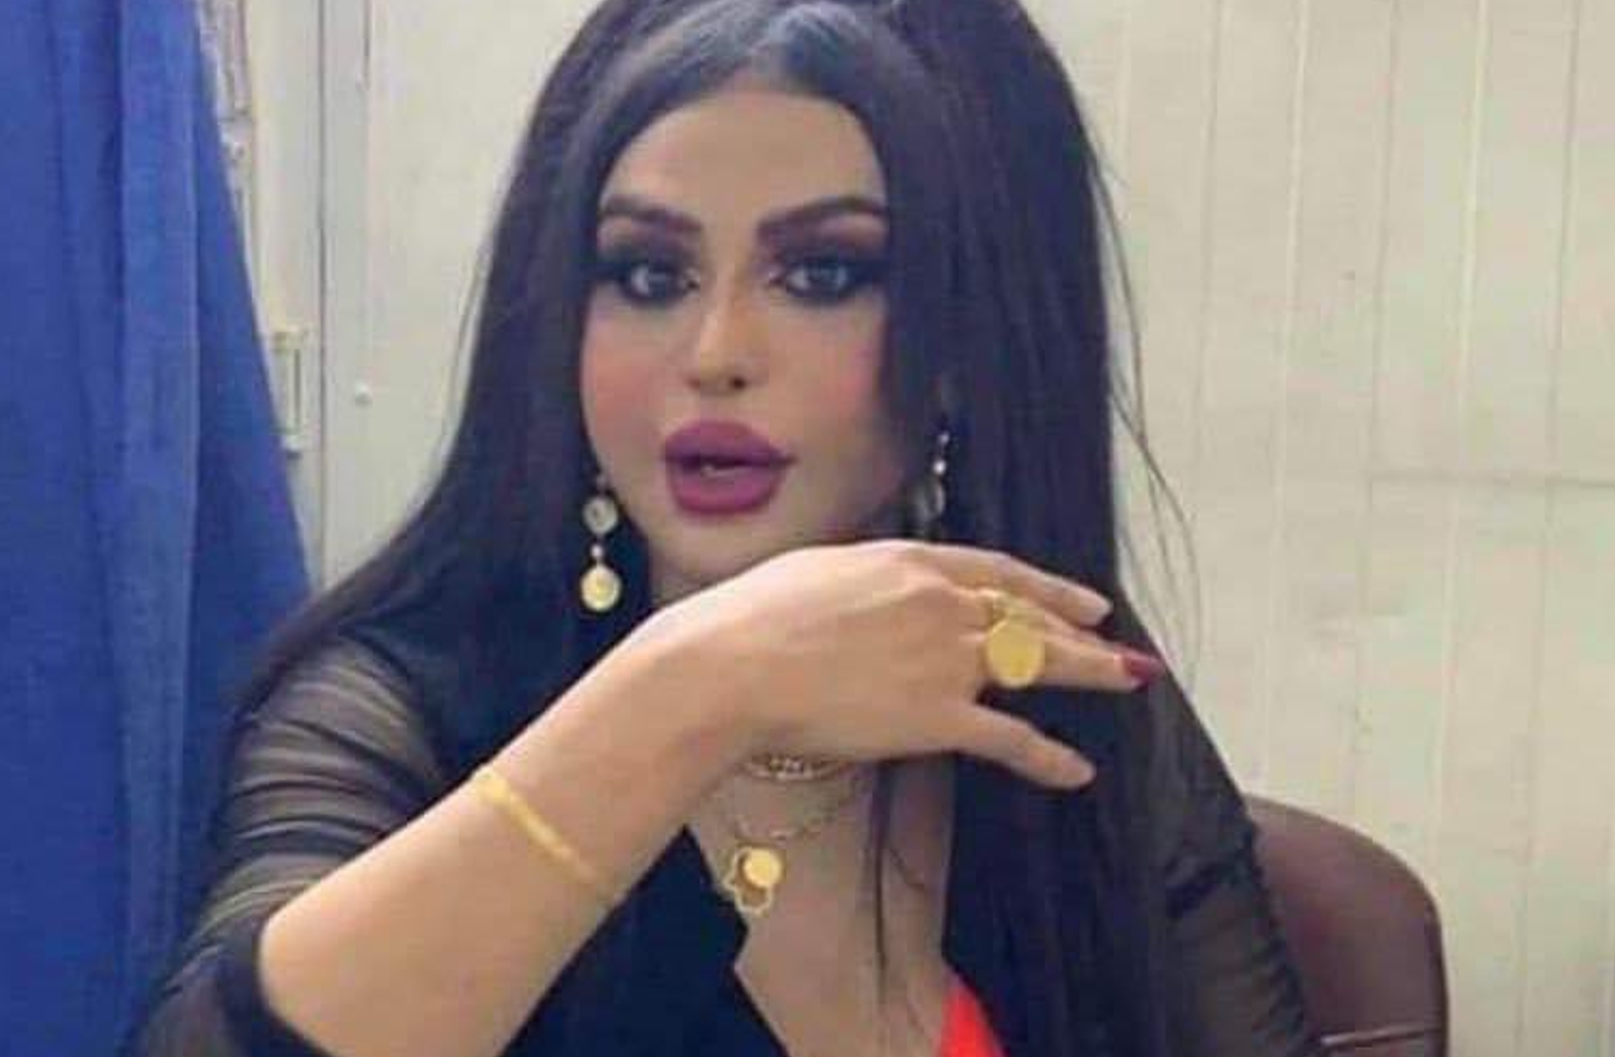 العراق يكشف تفاصيل وفاة المتحول جنسيا جوجو دعارة في السجن.. هل تعاطى مخدرات؟